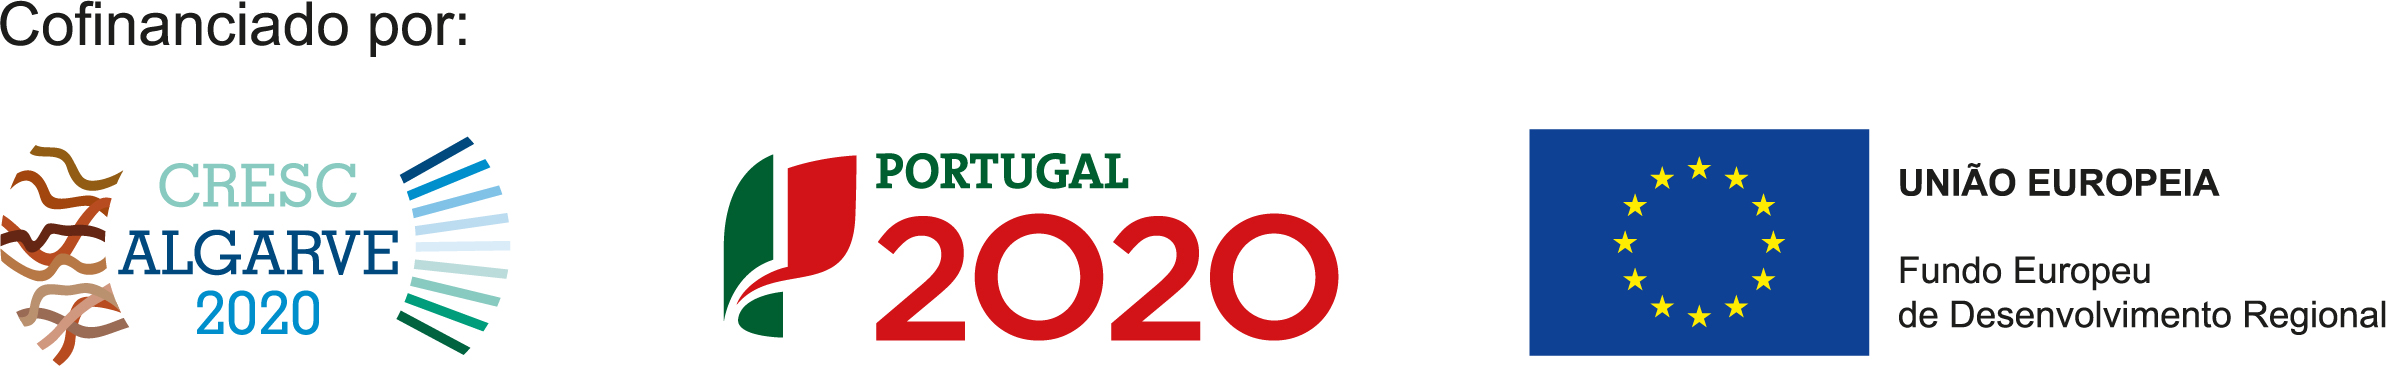 cofinanciado por crescAlgarve portugal2020 uniaoeuropeia